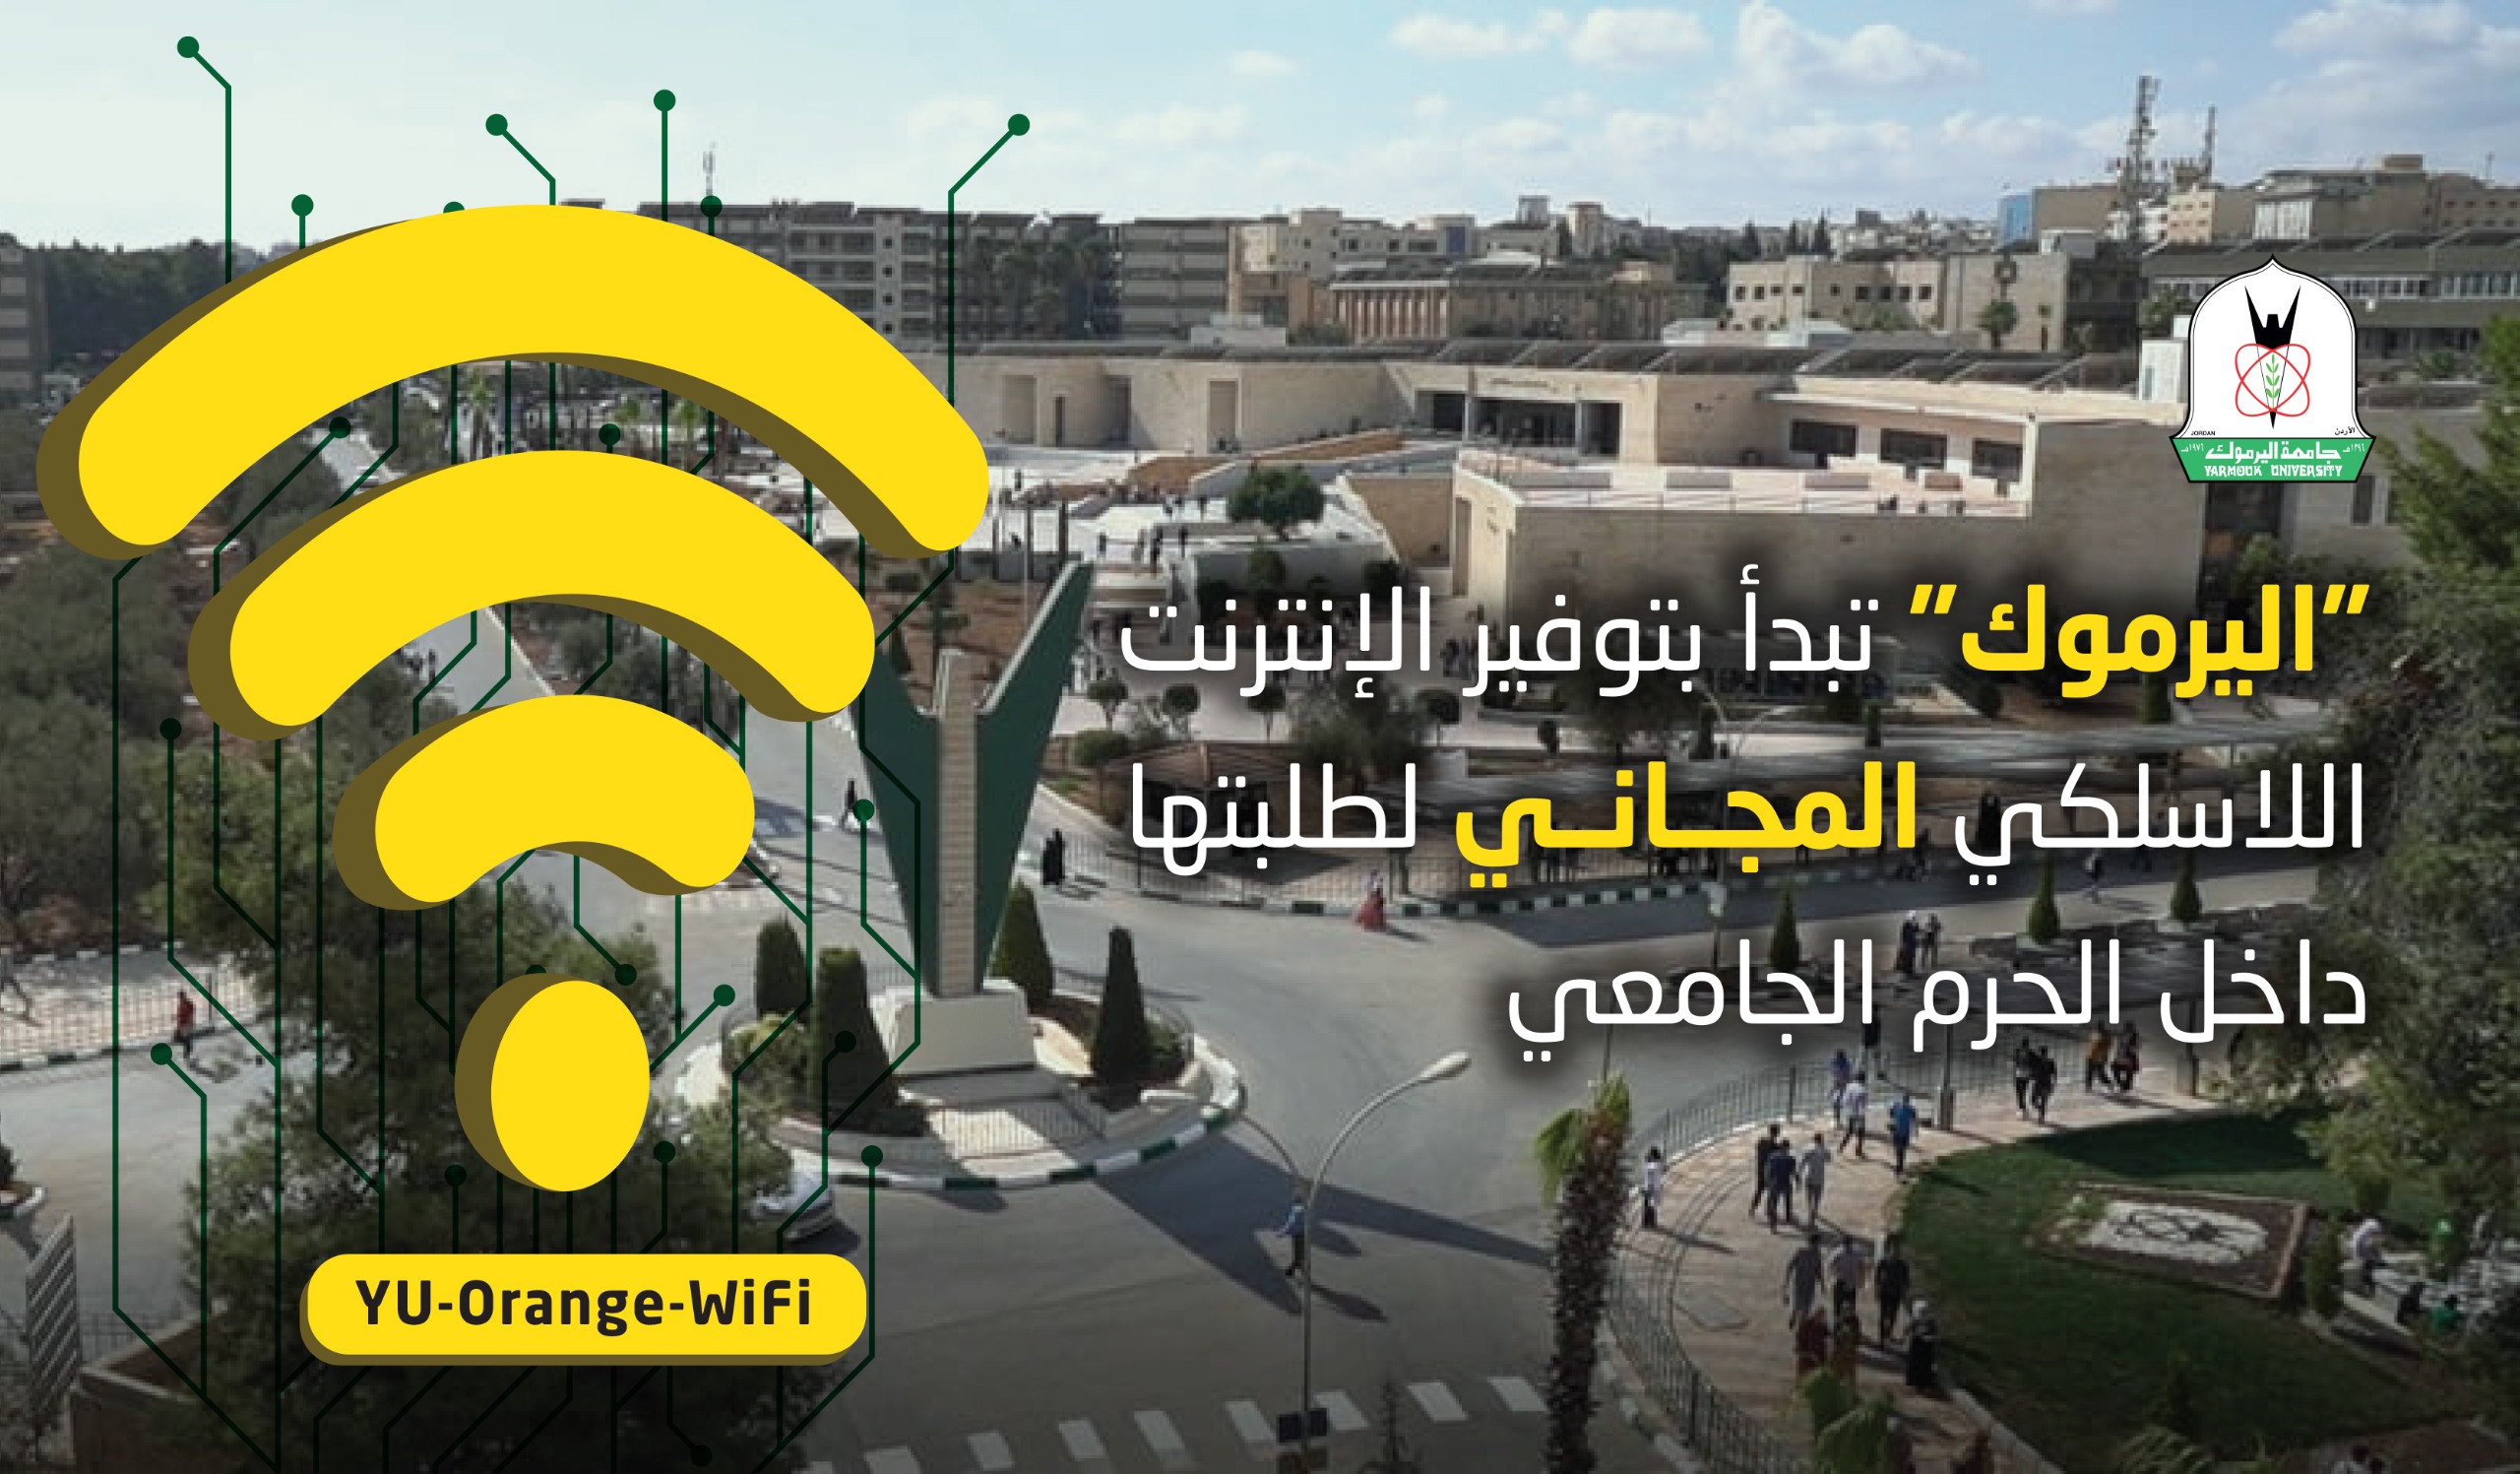  "اليرموك" تبدأ بتوفير الإنترنت اللاسلكي المجاني لطلبتها داخل الحرم الجامعي